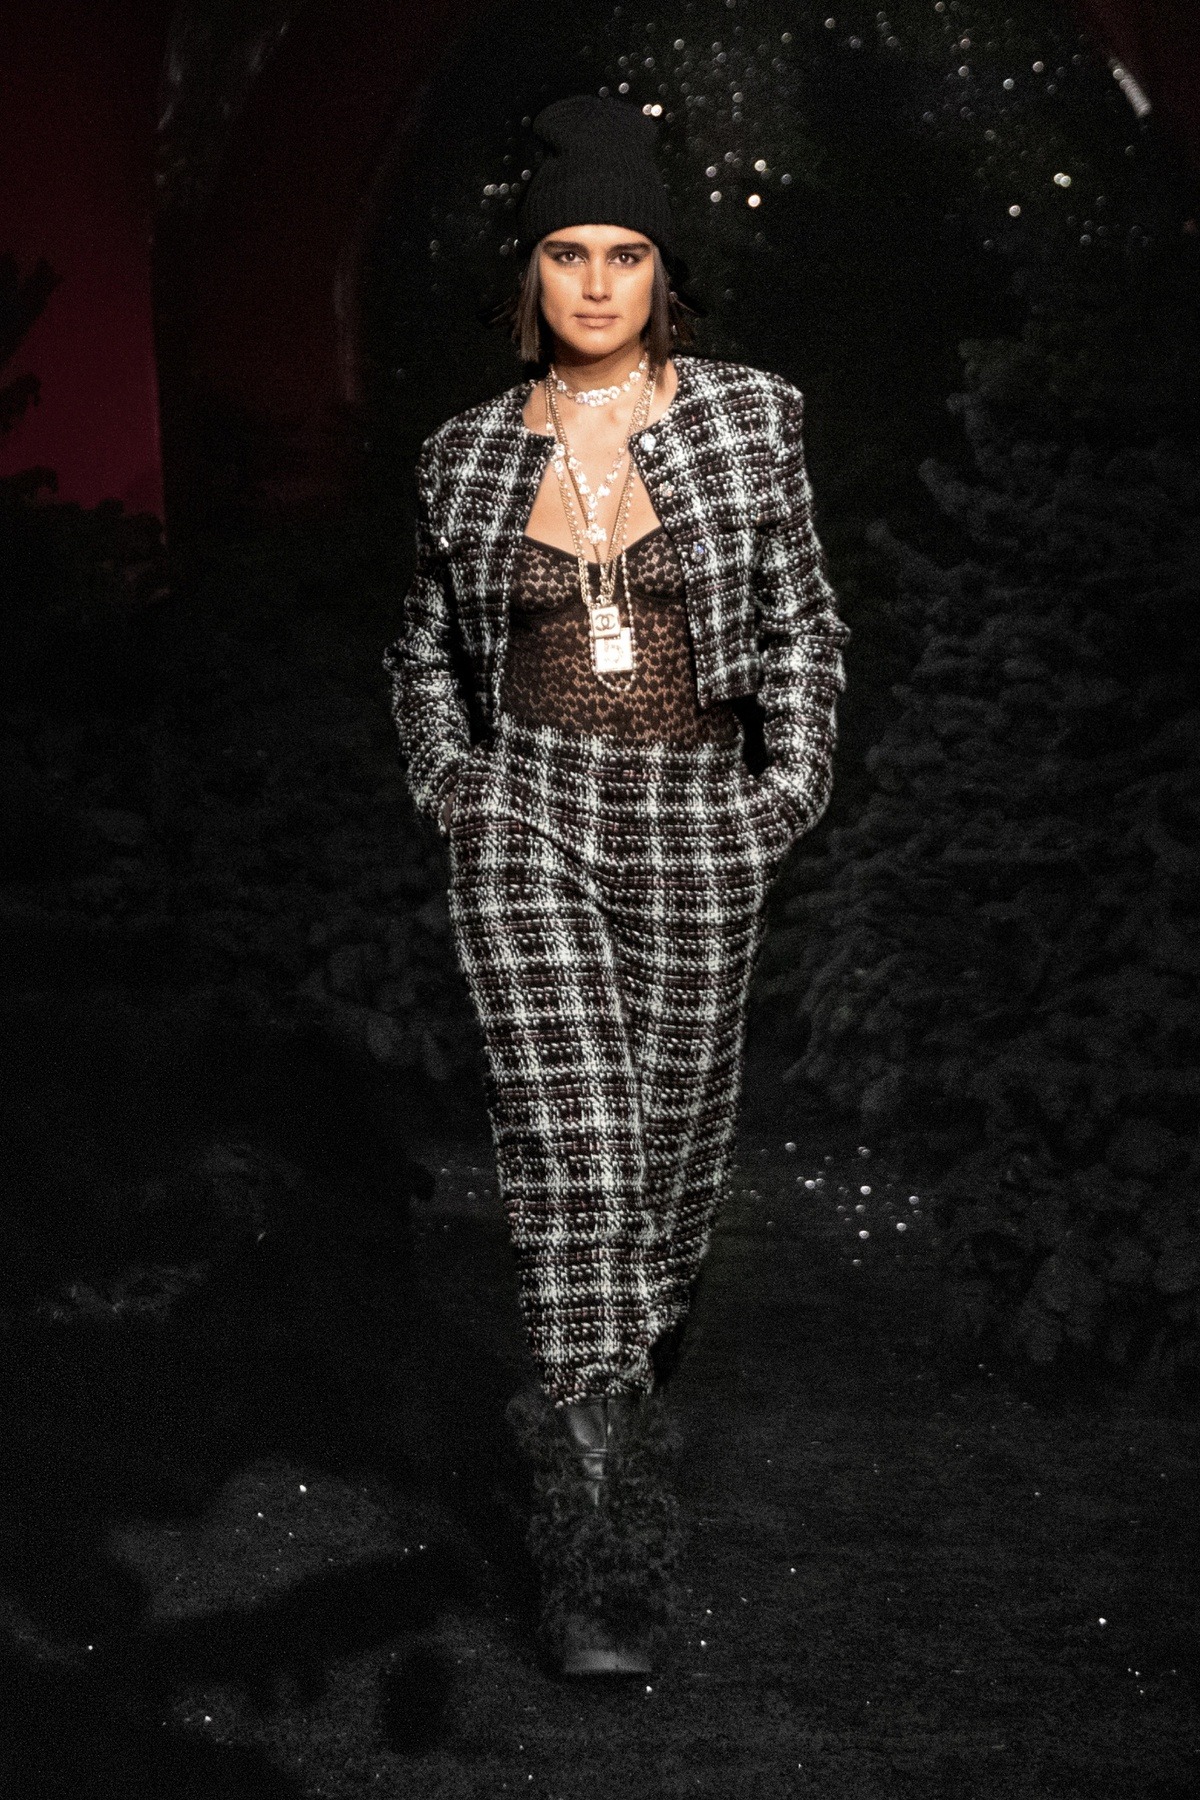 Chanel đang hướng tới hình ảnh những Luxurious Dailywear (trang phục sang trọng mặc hàng ngày).